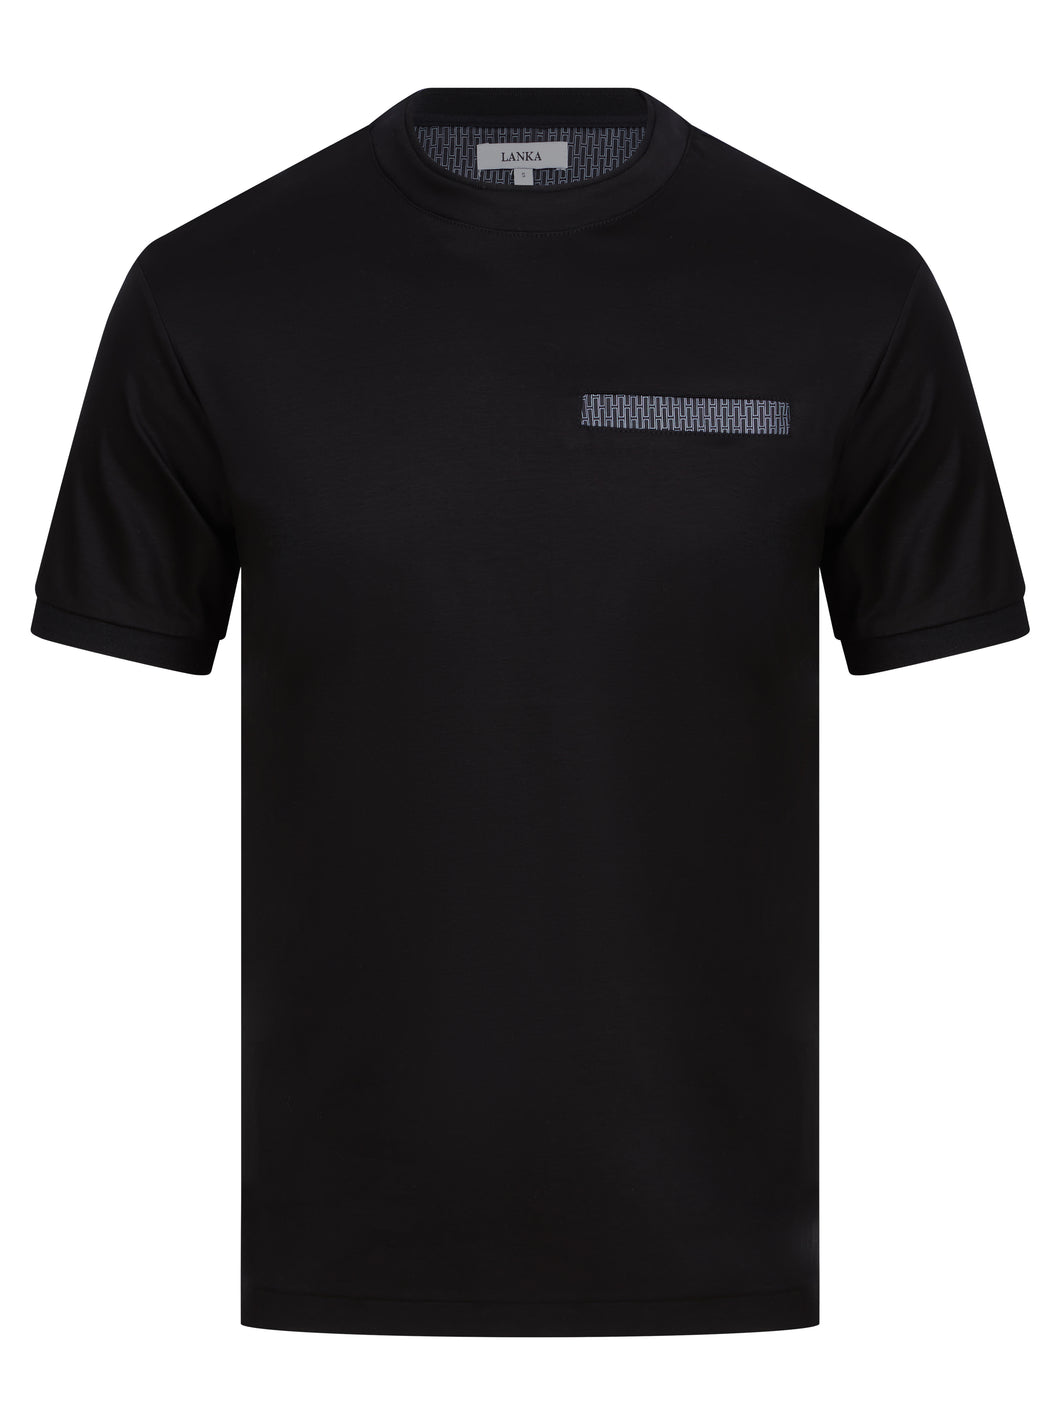 Lanka T Shirt Black